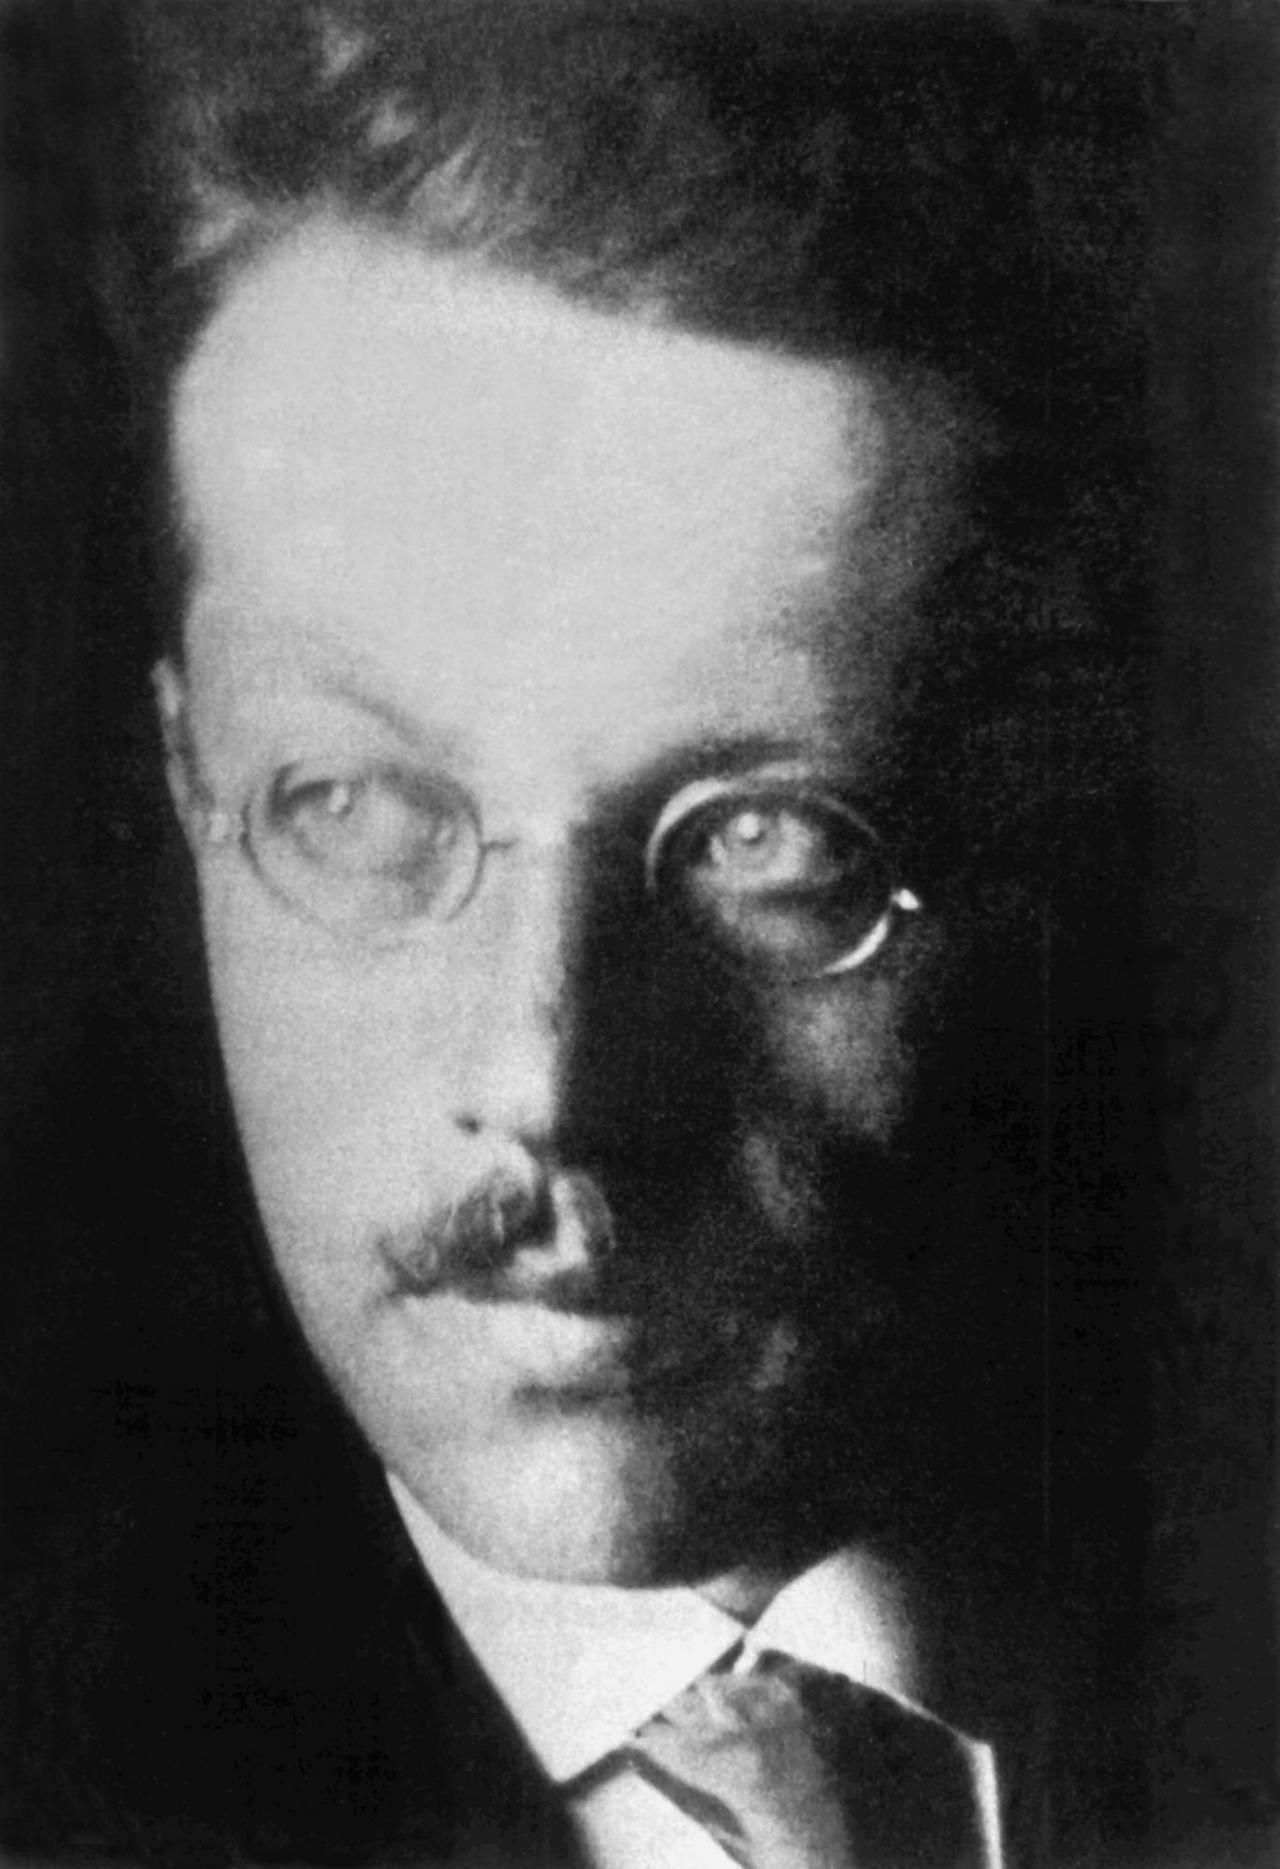 Der jüdische Historiker und Philosoph Franz Rosenzweig (1886-1929).